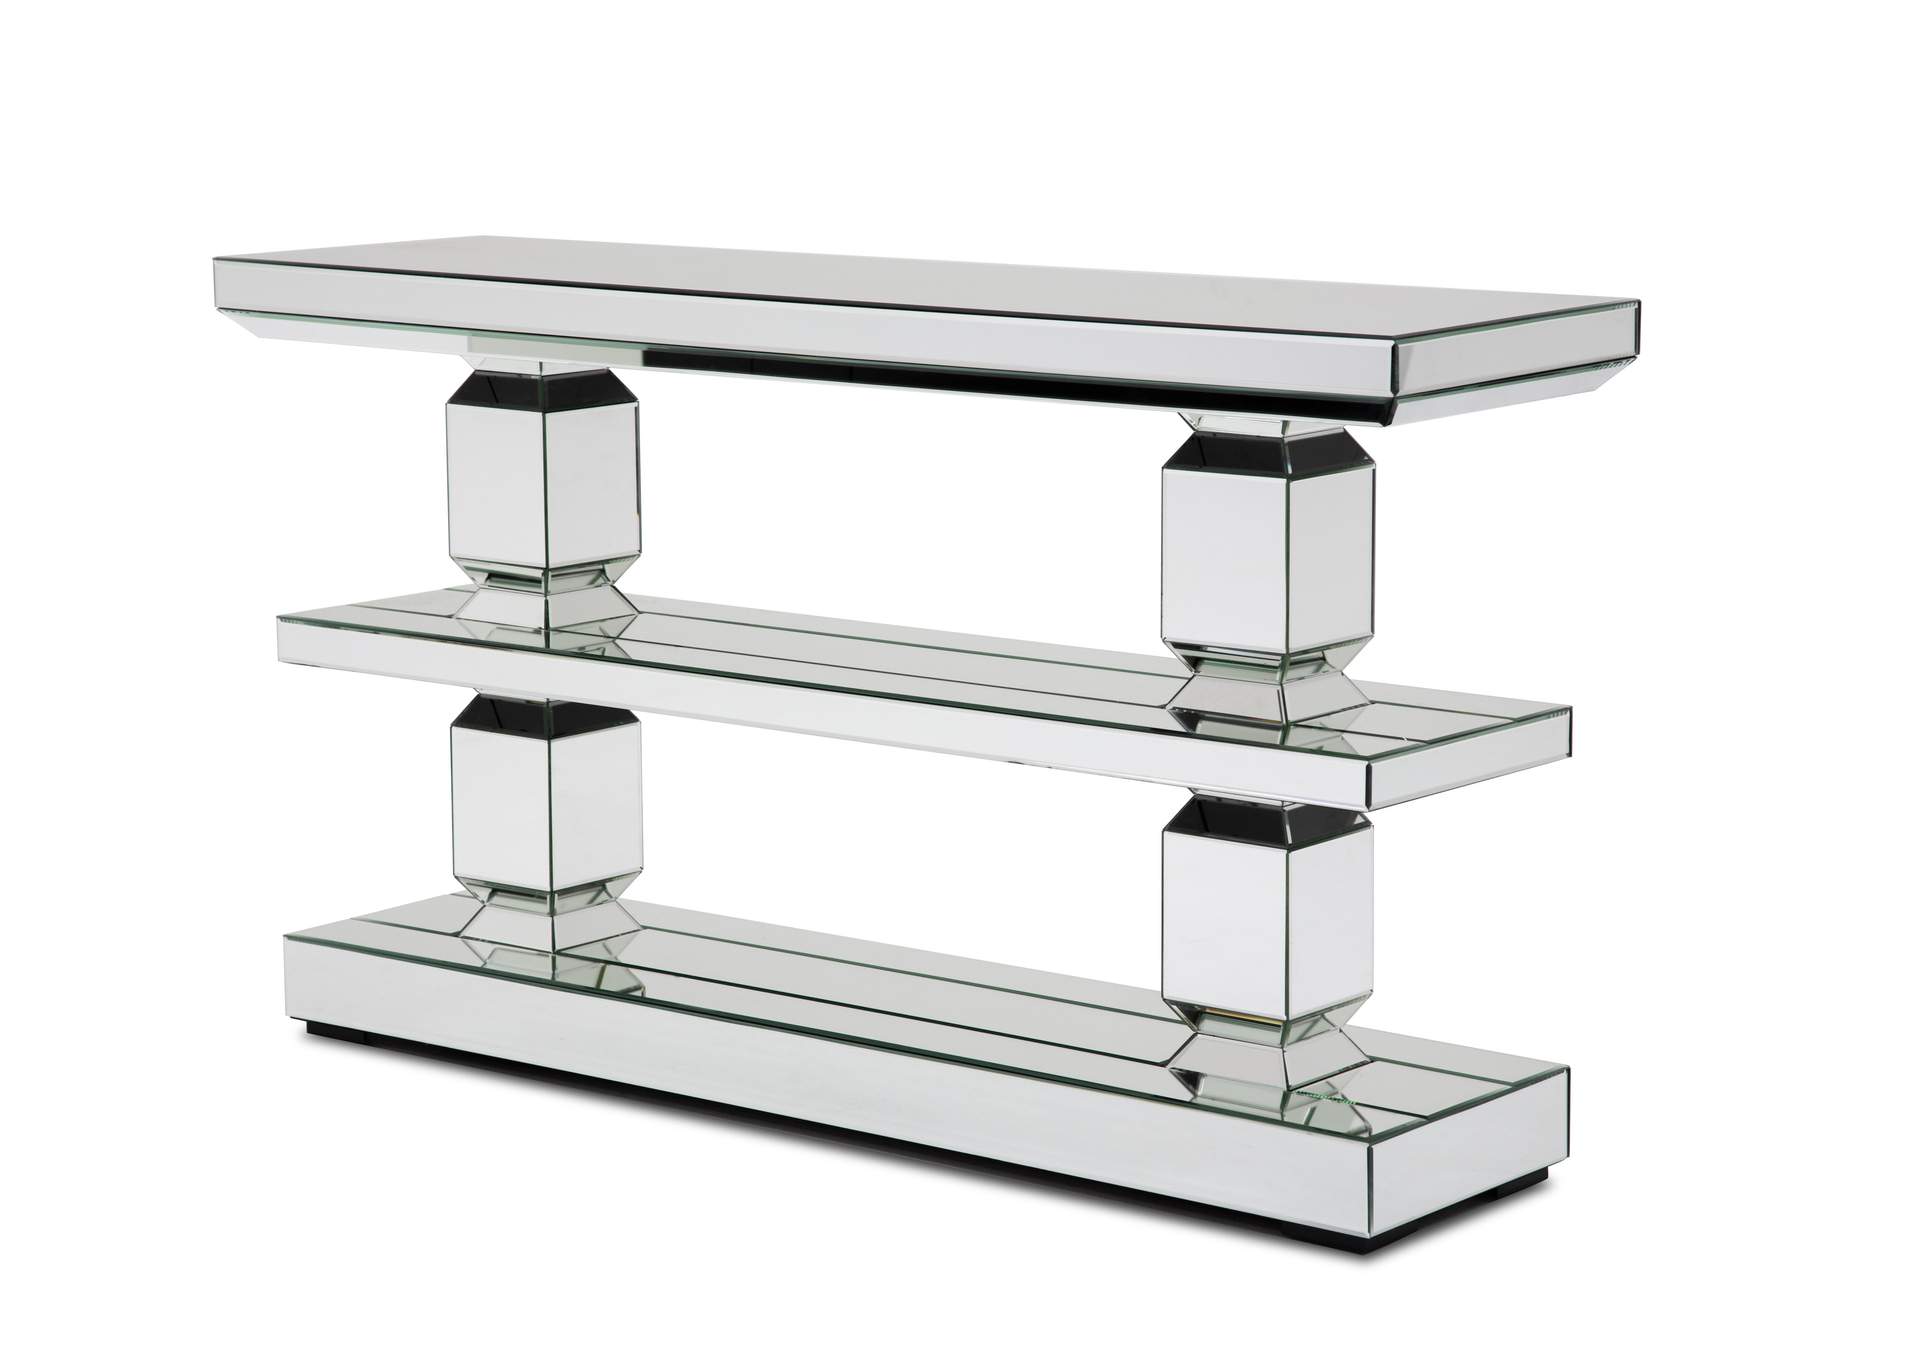 Montreal Mirrored Console Table Shelf w/Base, 2pc,Michael Amini (AICO)